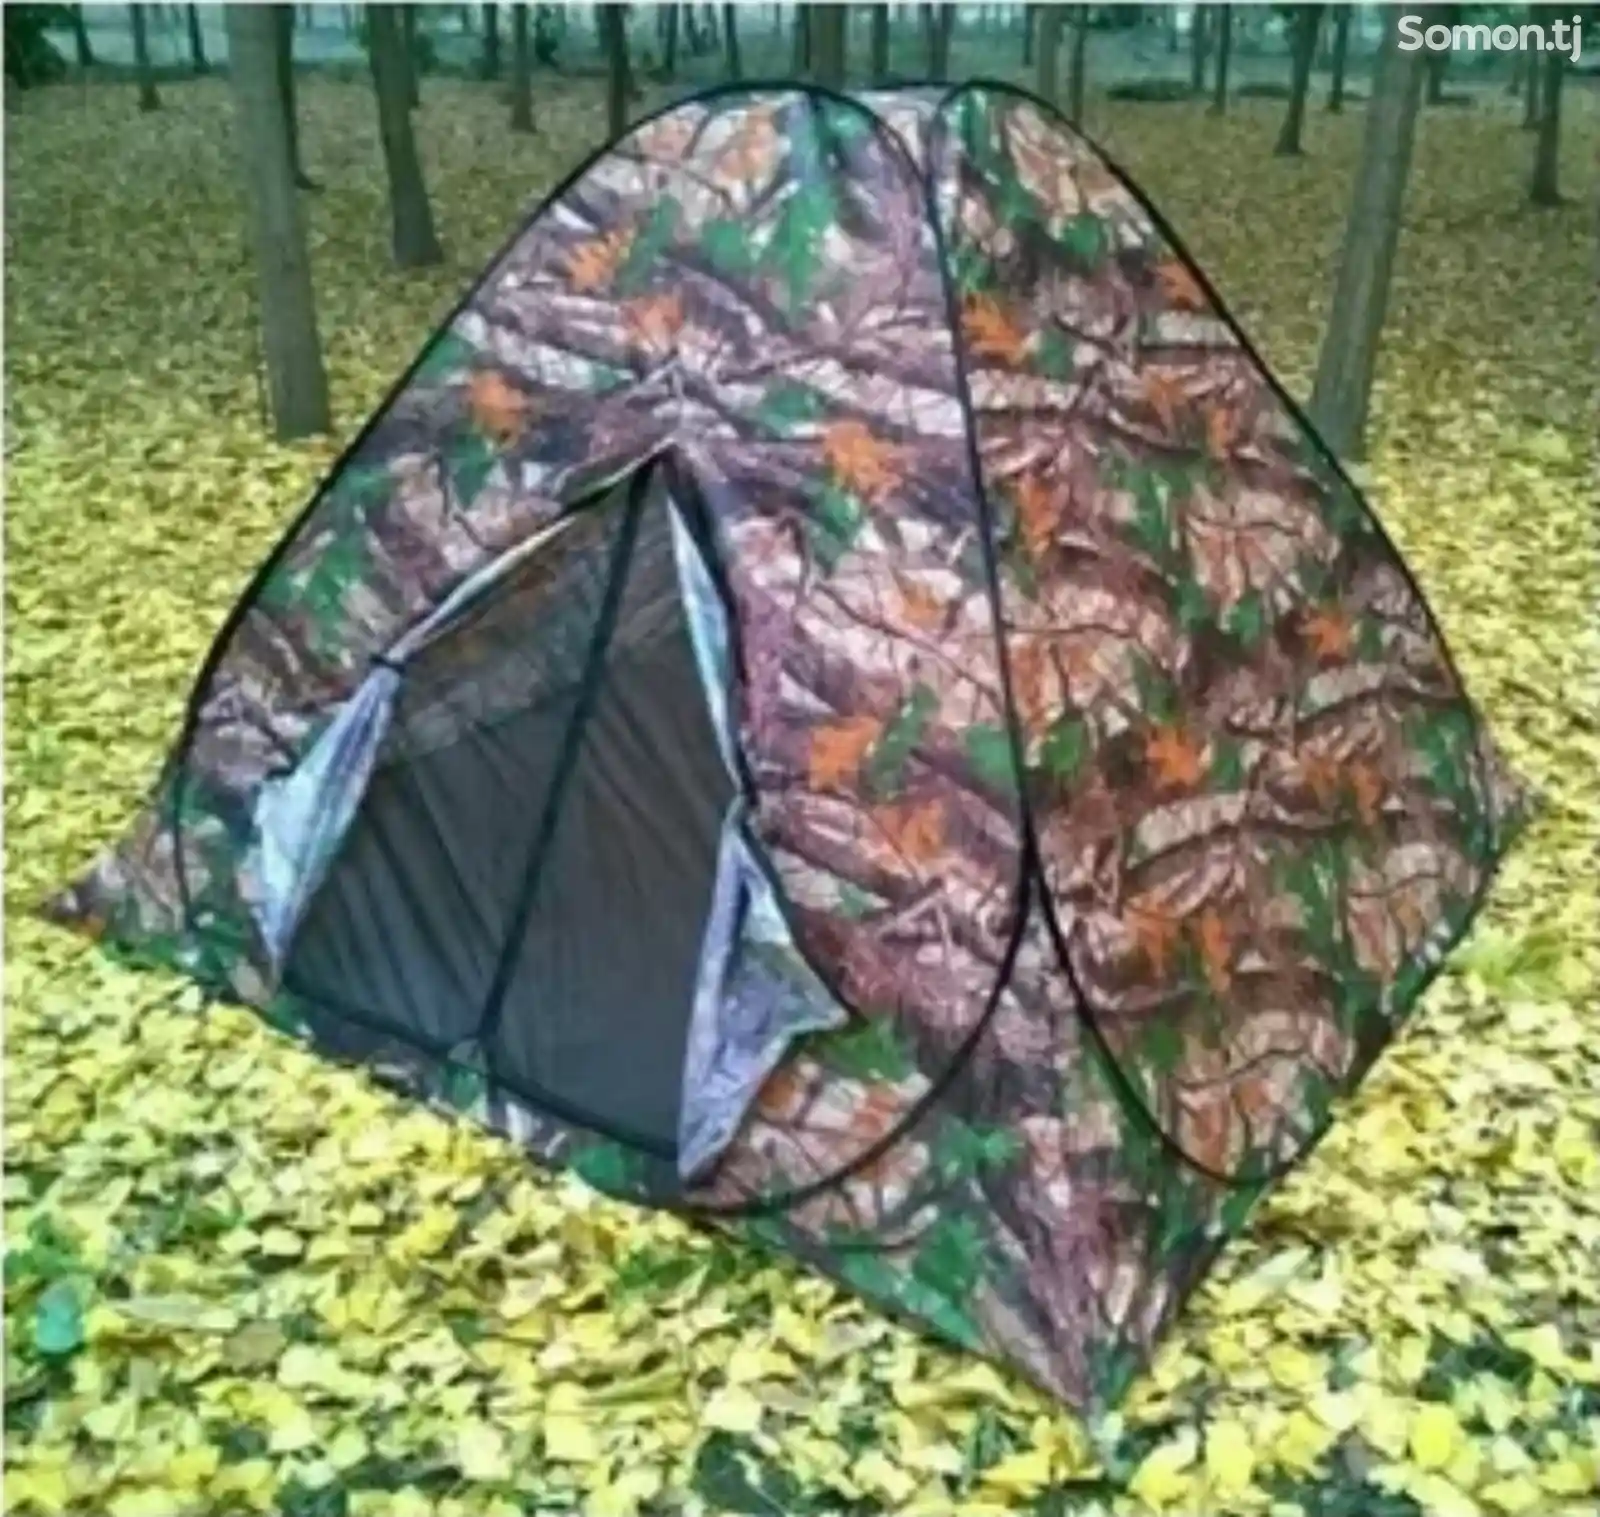 Палатка-2